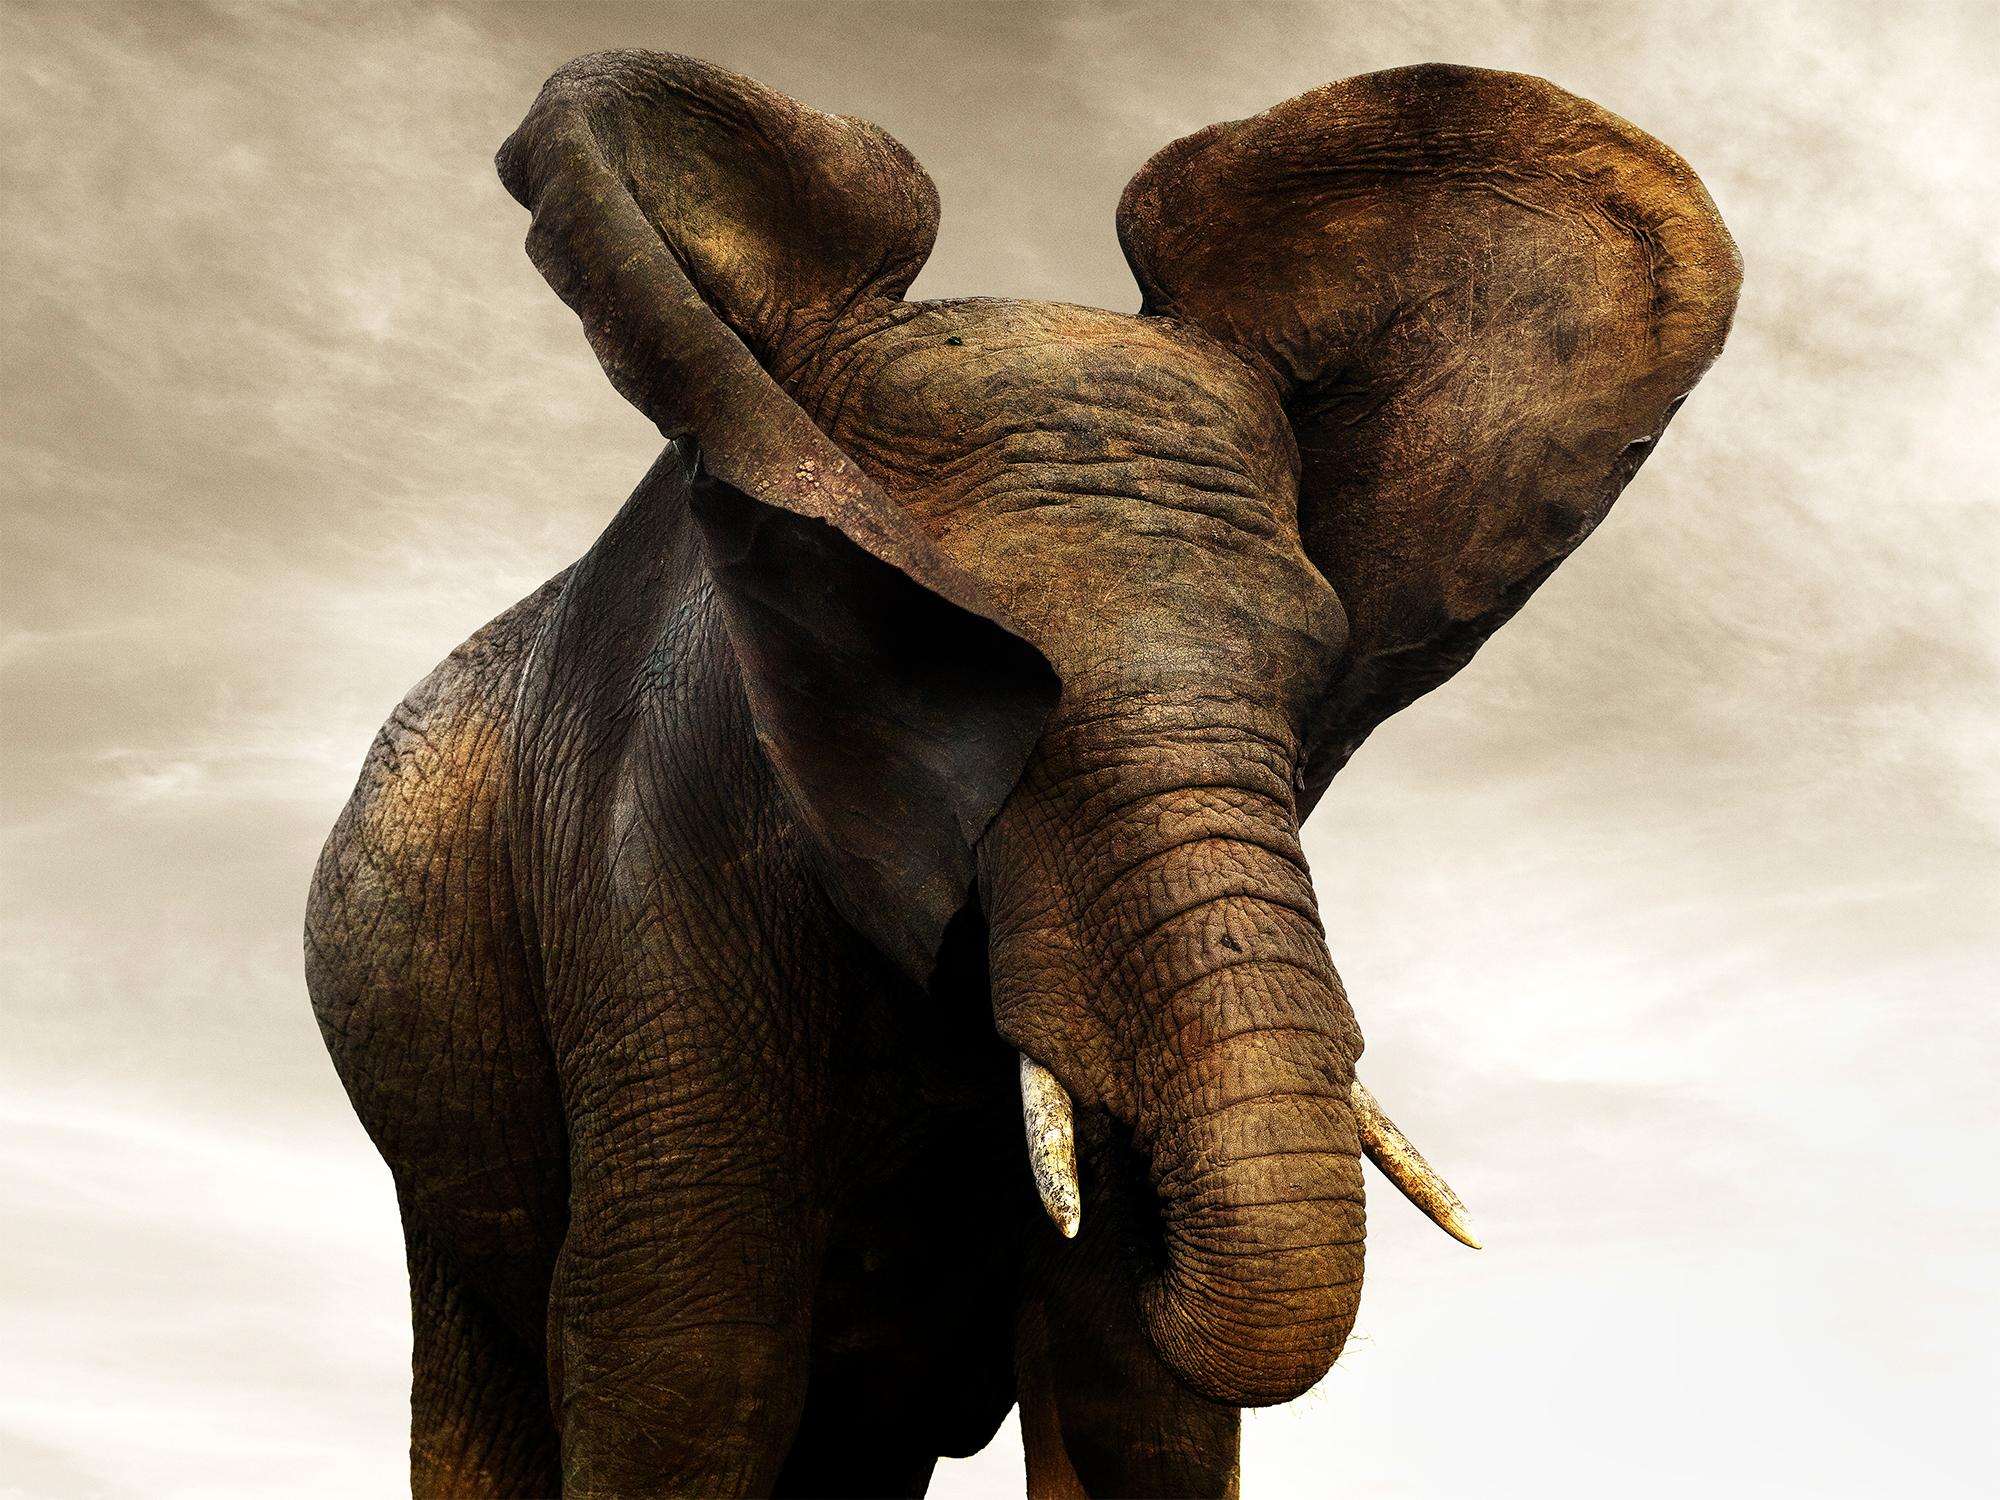 Golden Giant I, animal, wildlife, black and white photography, elephant